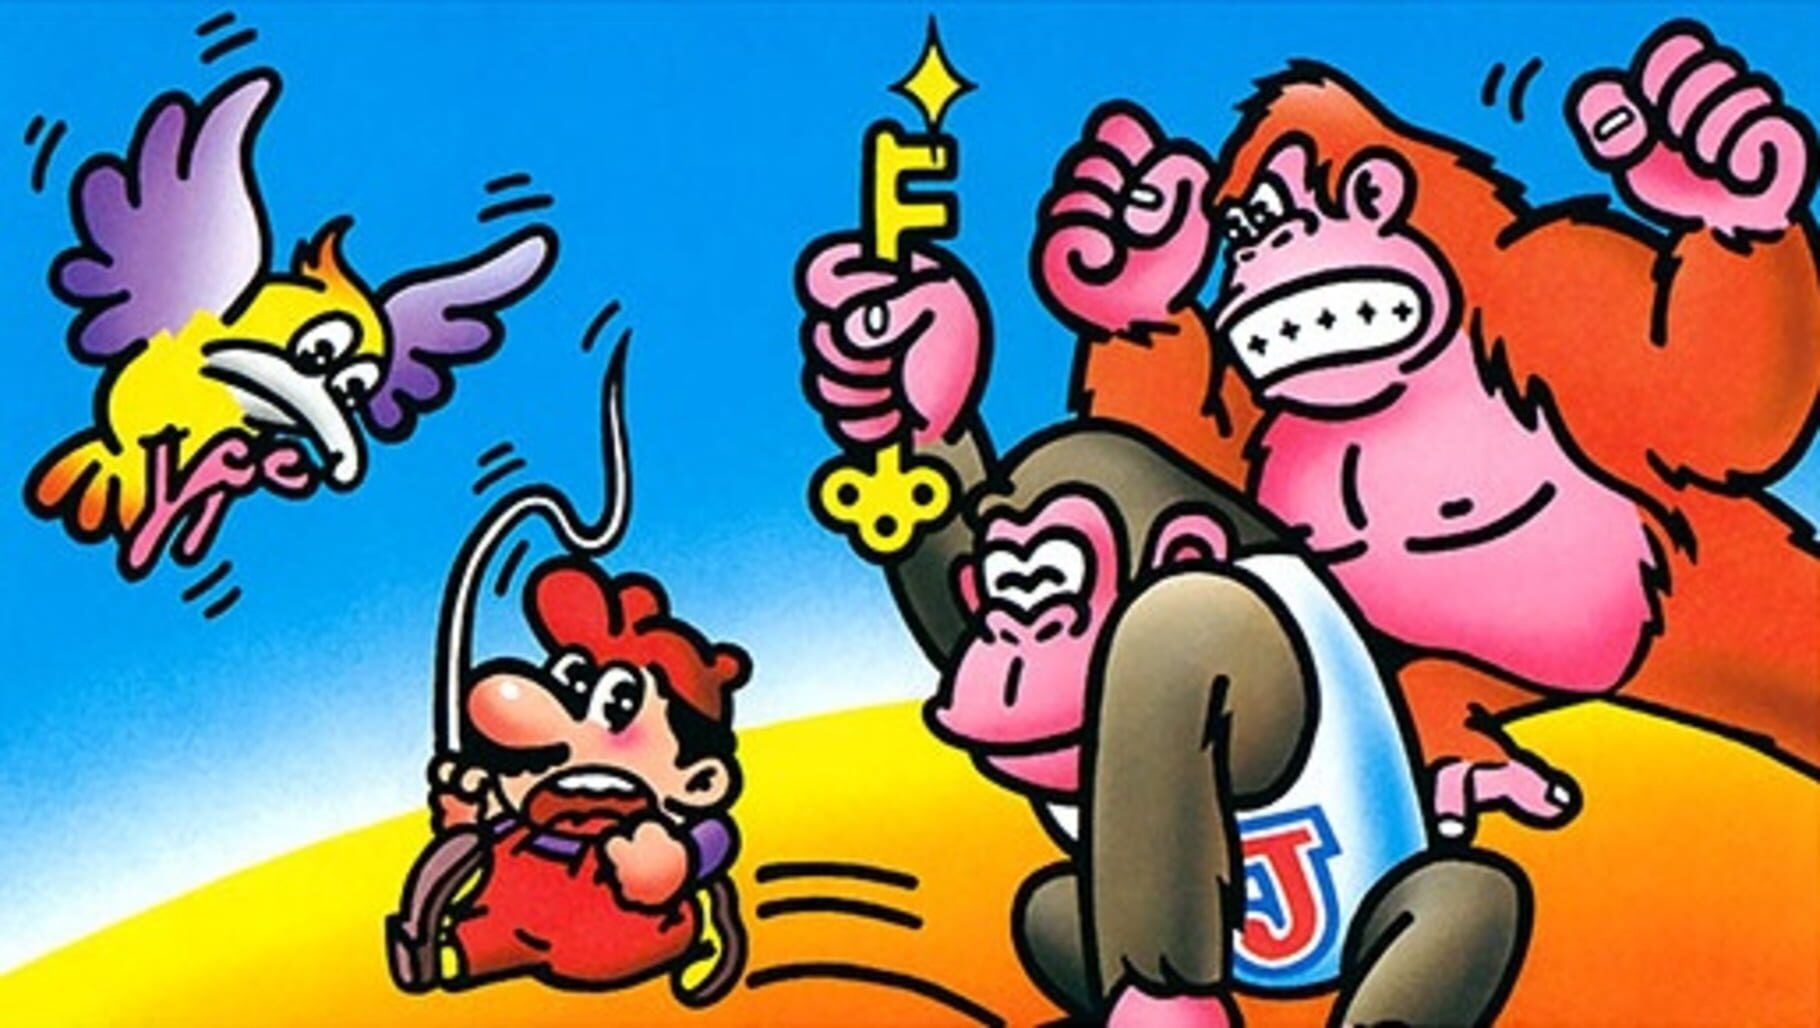 Arte - Donkey Kong Jr.